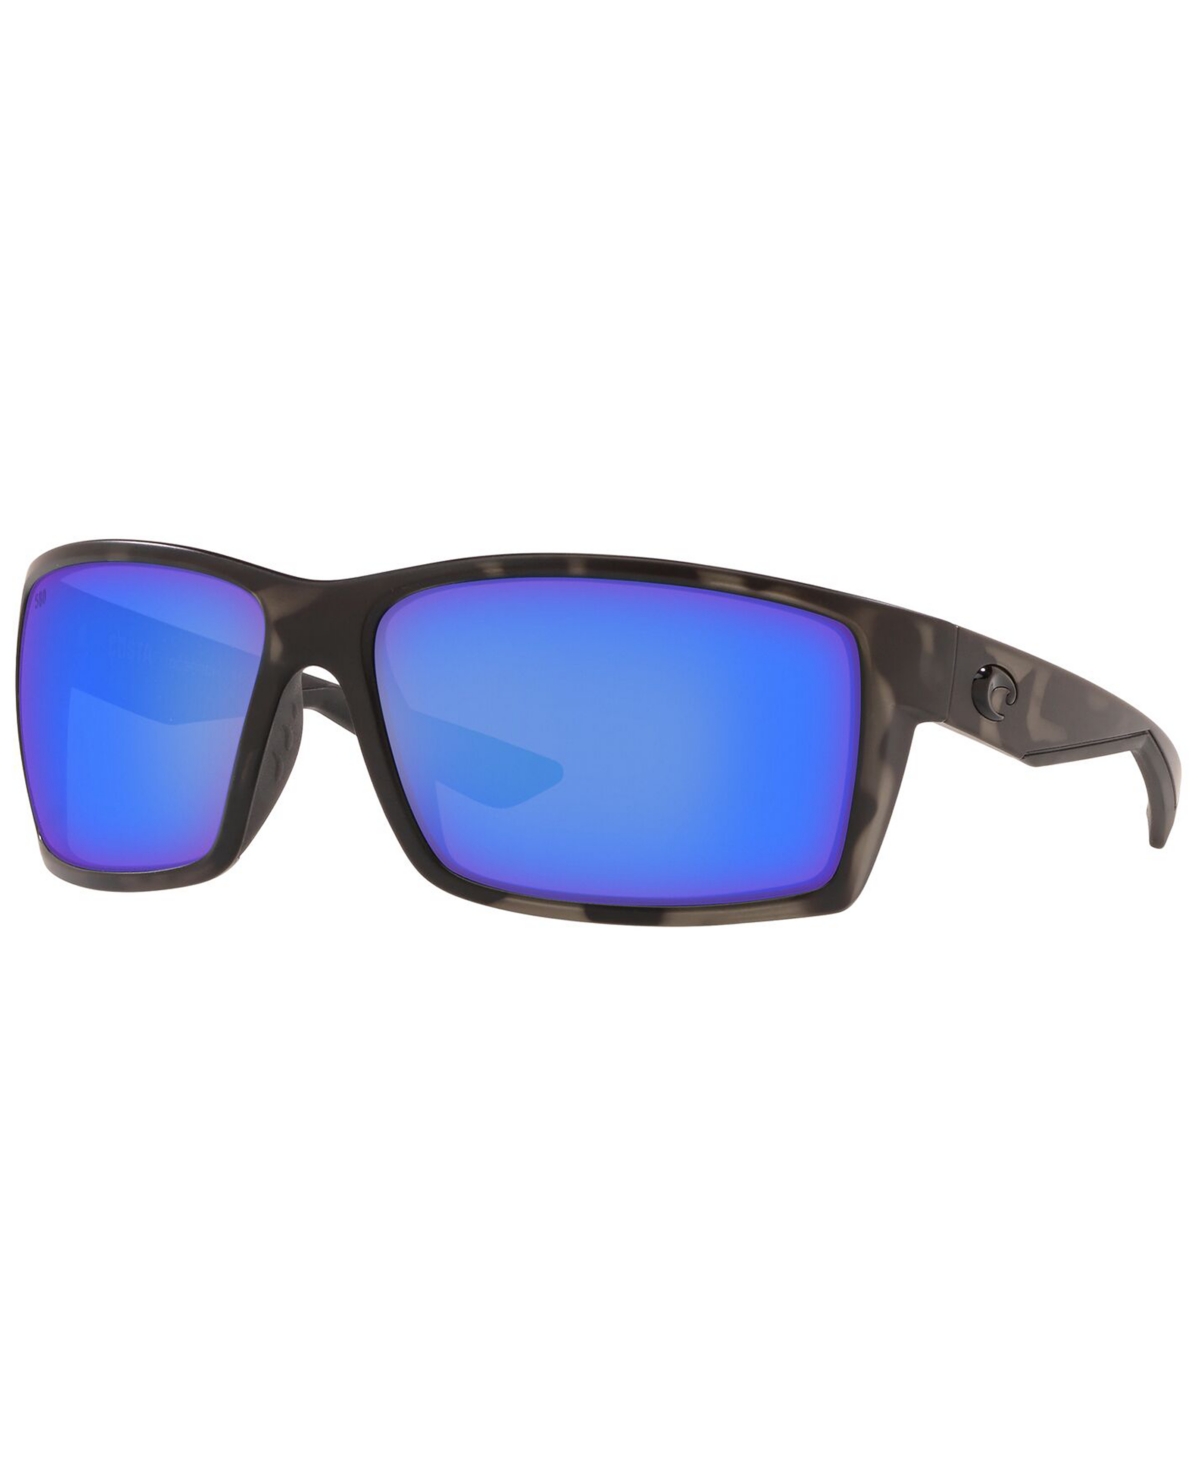 Polarized Sunglasses, Reefton 64 - OC OCEARCH MATT TIGER SHARK/BLUE MIR G